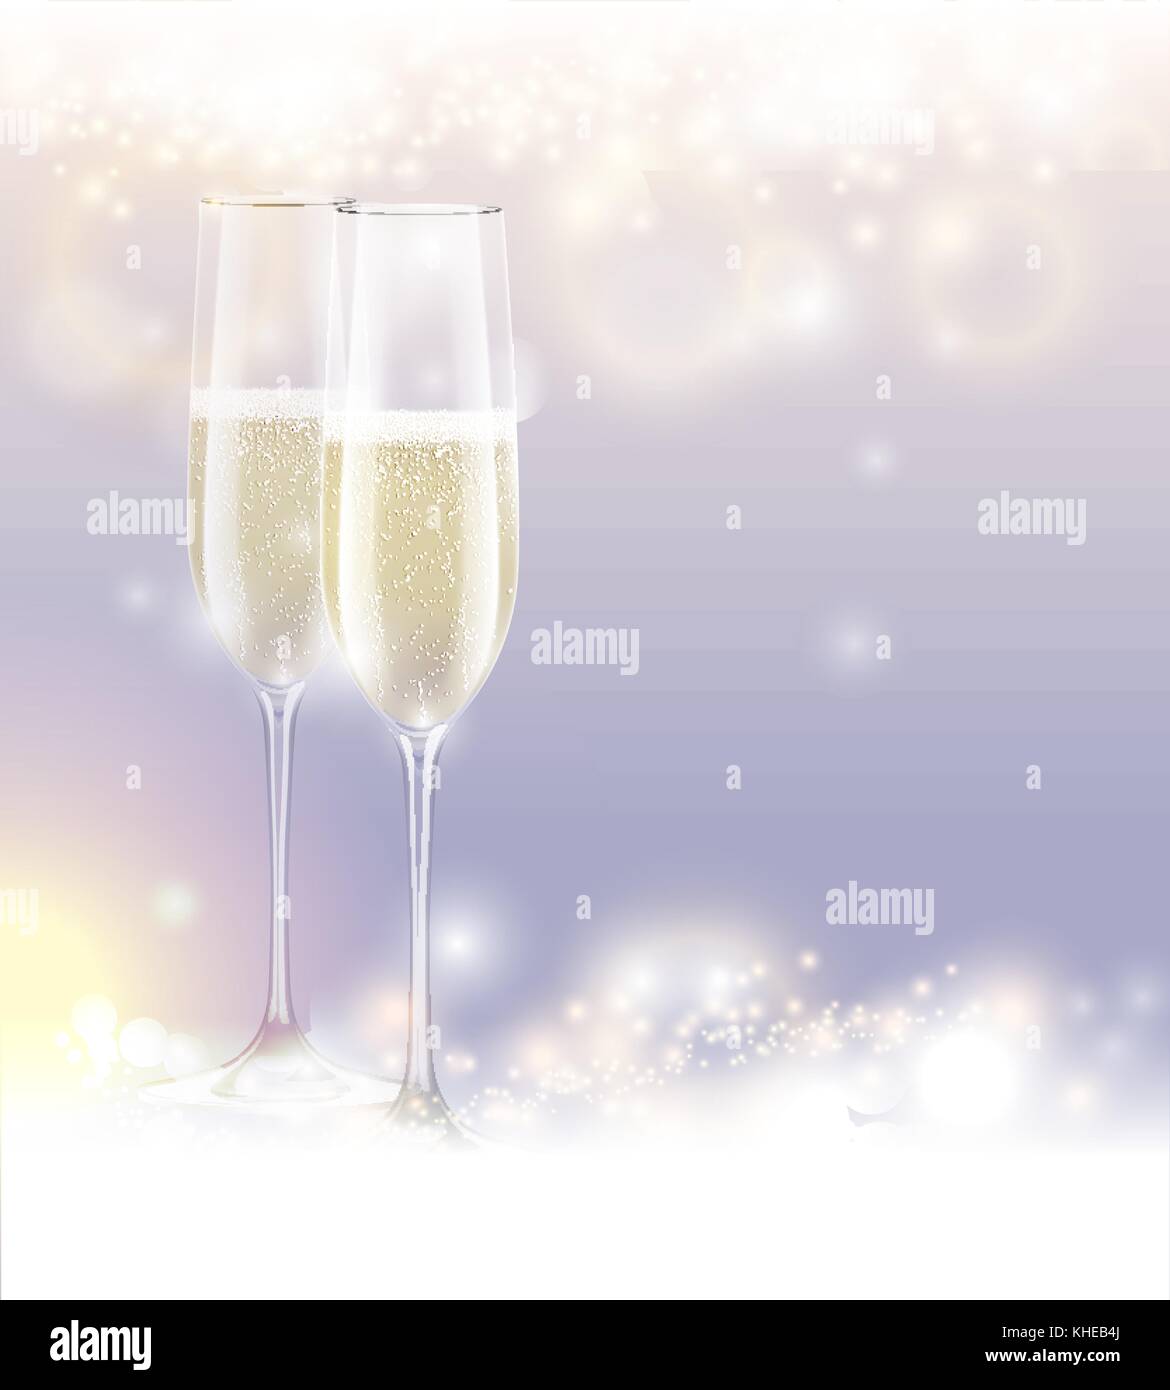 Nouvel an fête fond deux verres de champagne. abstract sparkling light magic glitter. bougies fête lumineuse affiche avec des étincelles Illustration de Vecteur